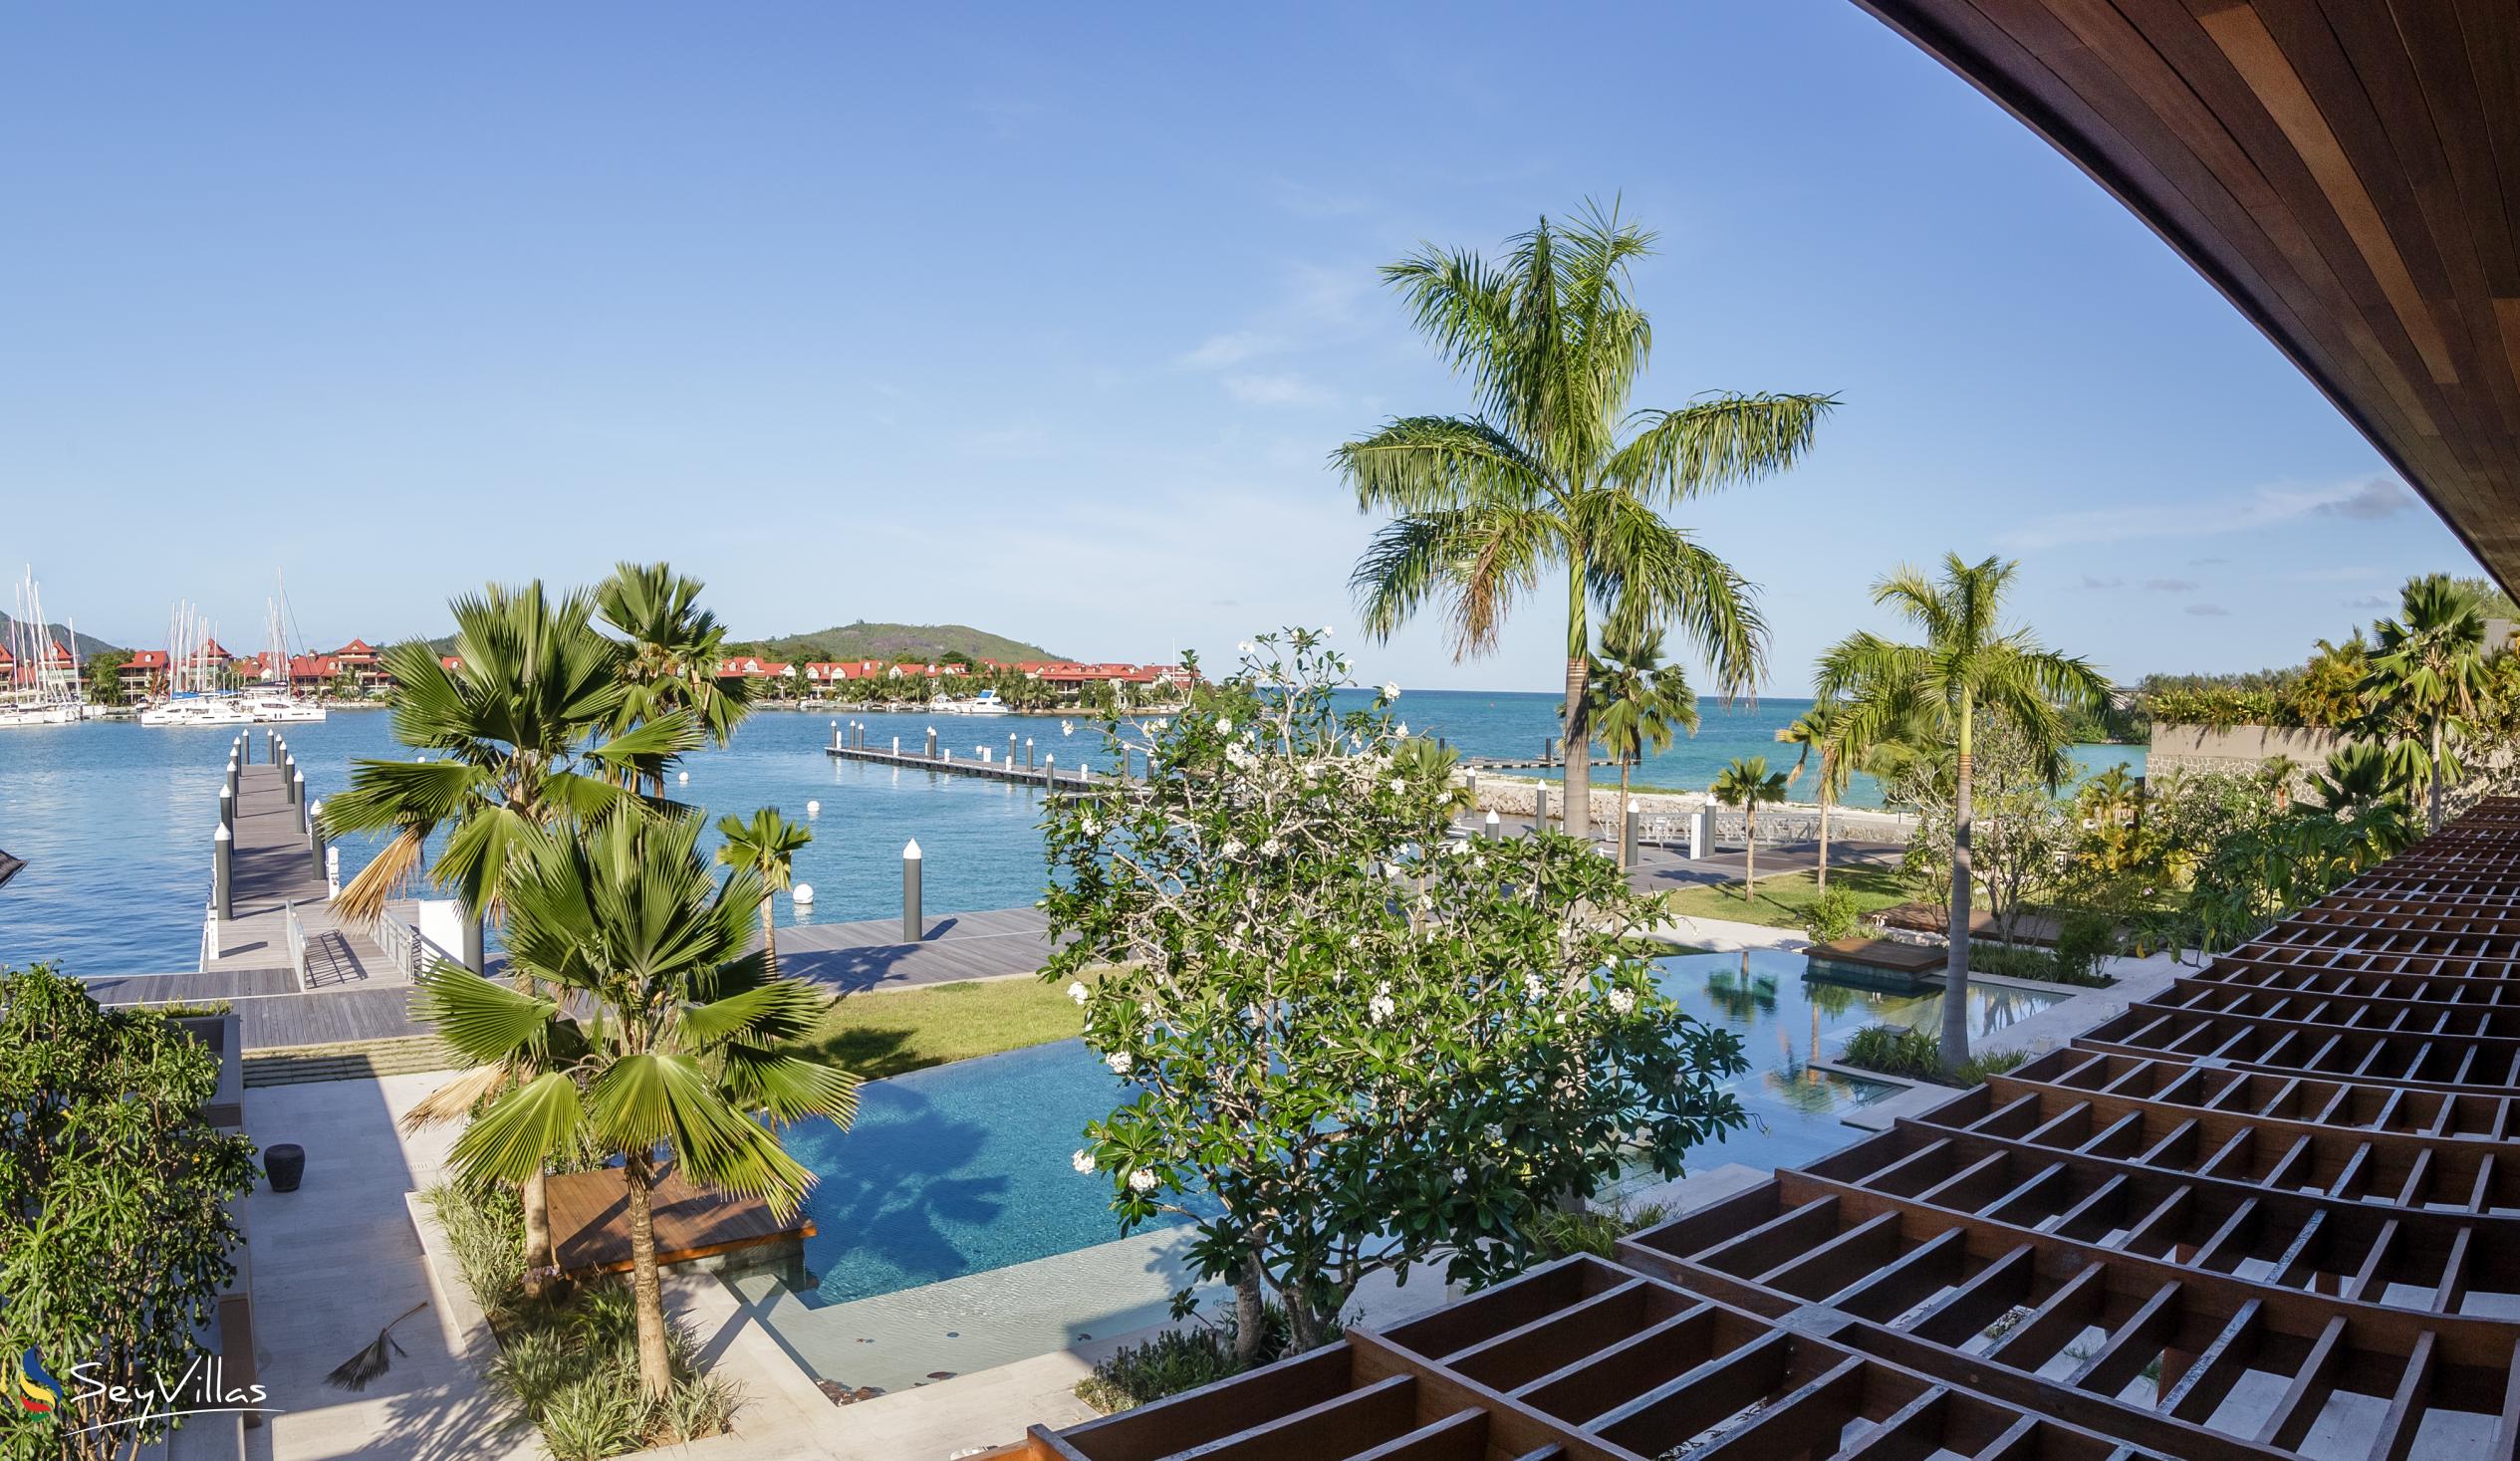 Photo 59: L'Escale Resort, Marina & Spa - Club Room Ocean View - Mahé (Seychelles)